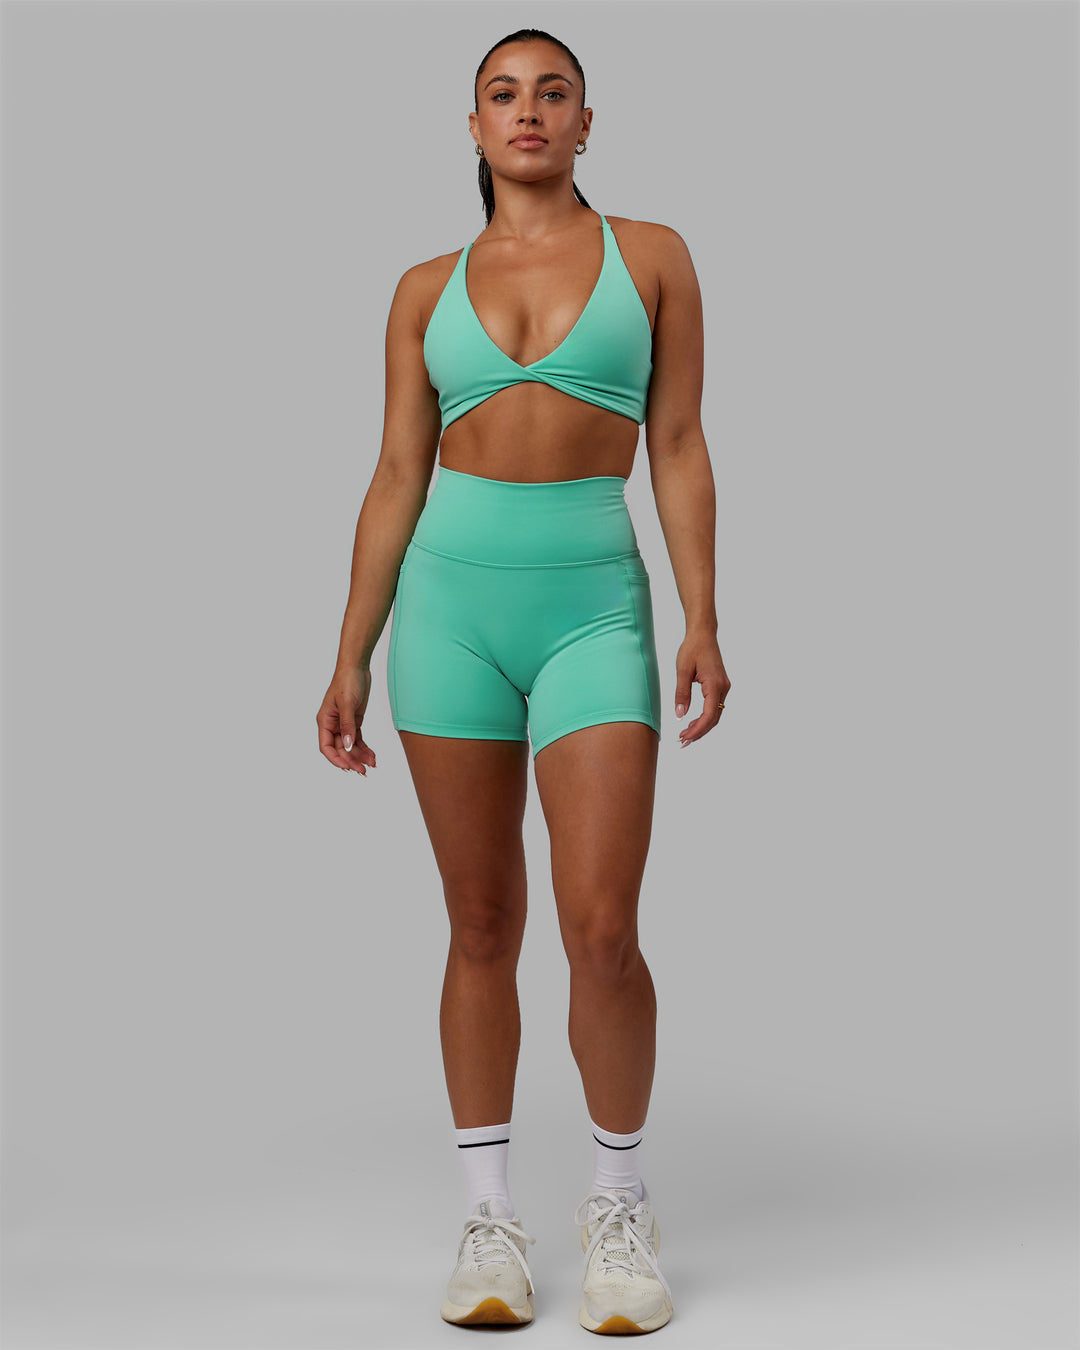 Woman wearing Fusion X-Short Tights - Aquatic Awe